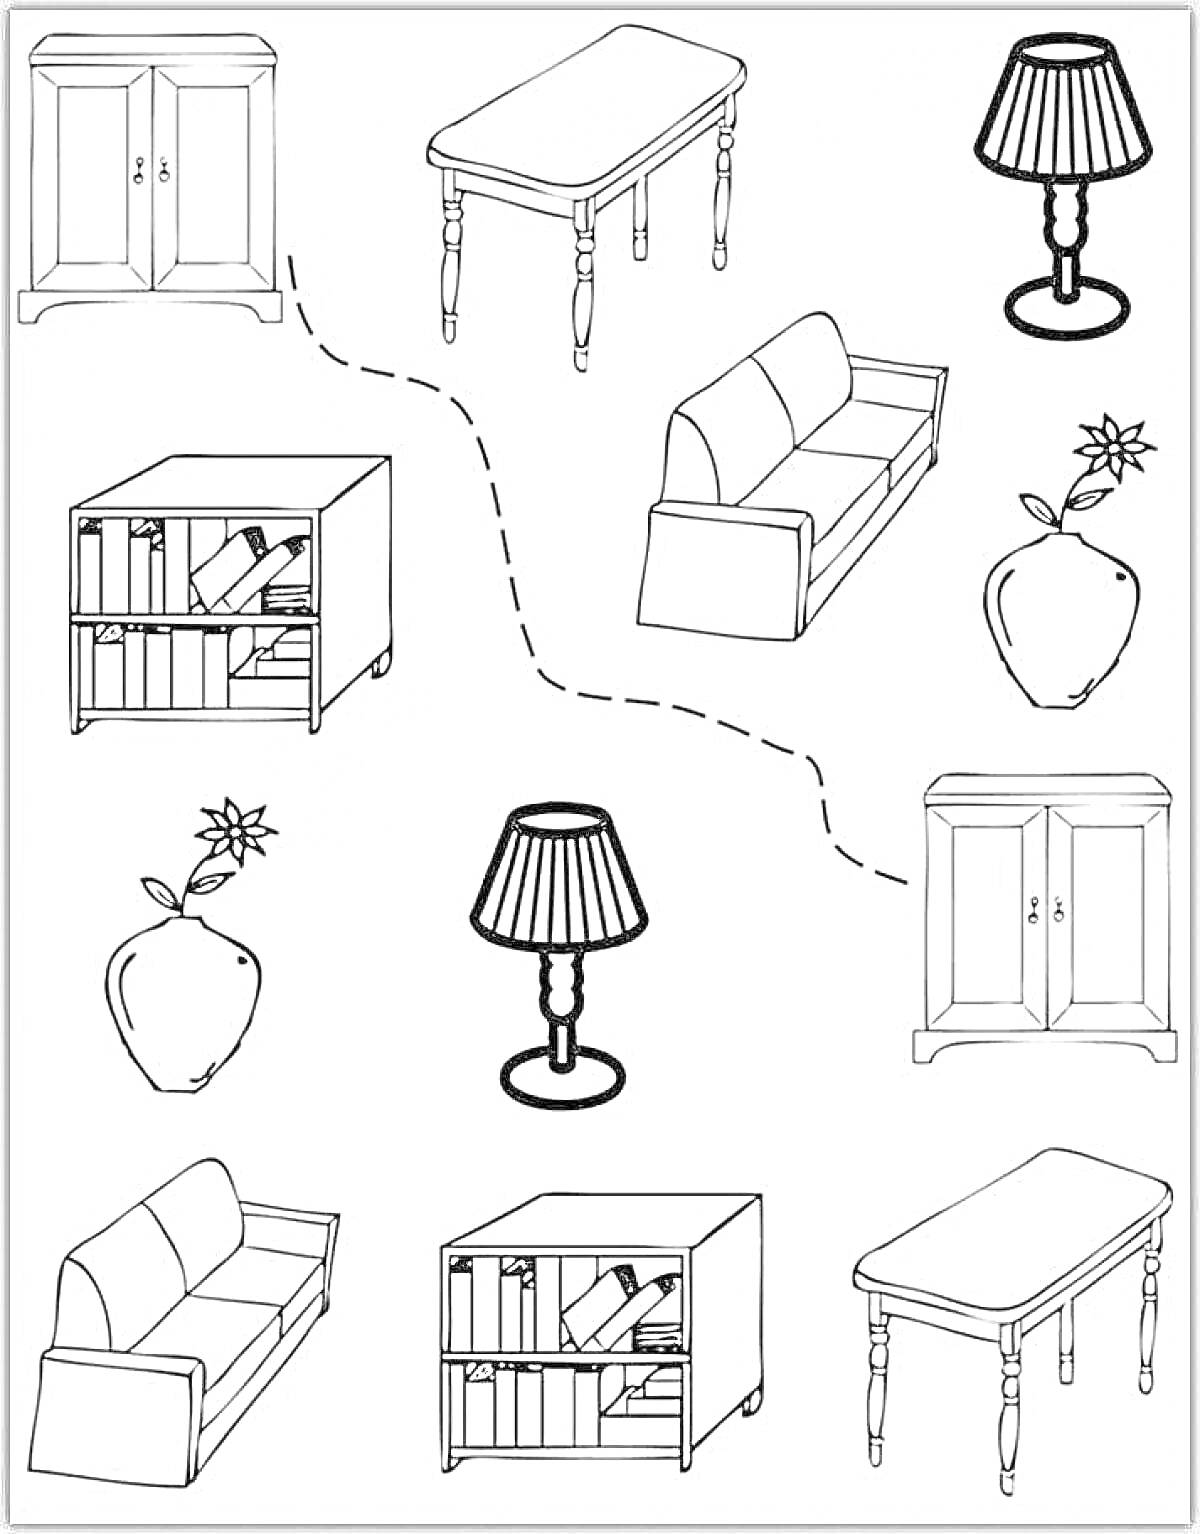 Раскраска Раскраска с мебелью для дошкольников - шкаф, стол, лампа, диван, книжный шкаф, яблоко с цветком